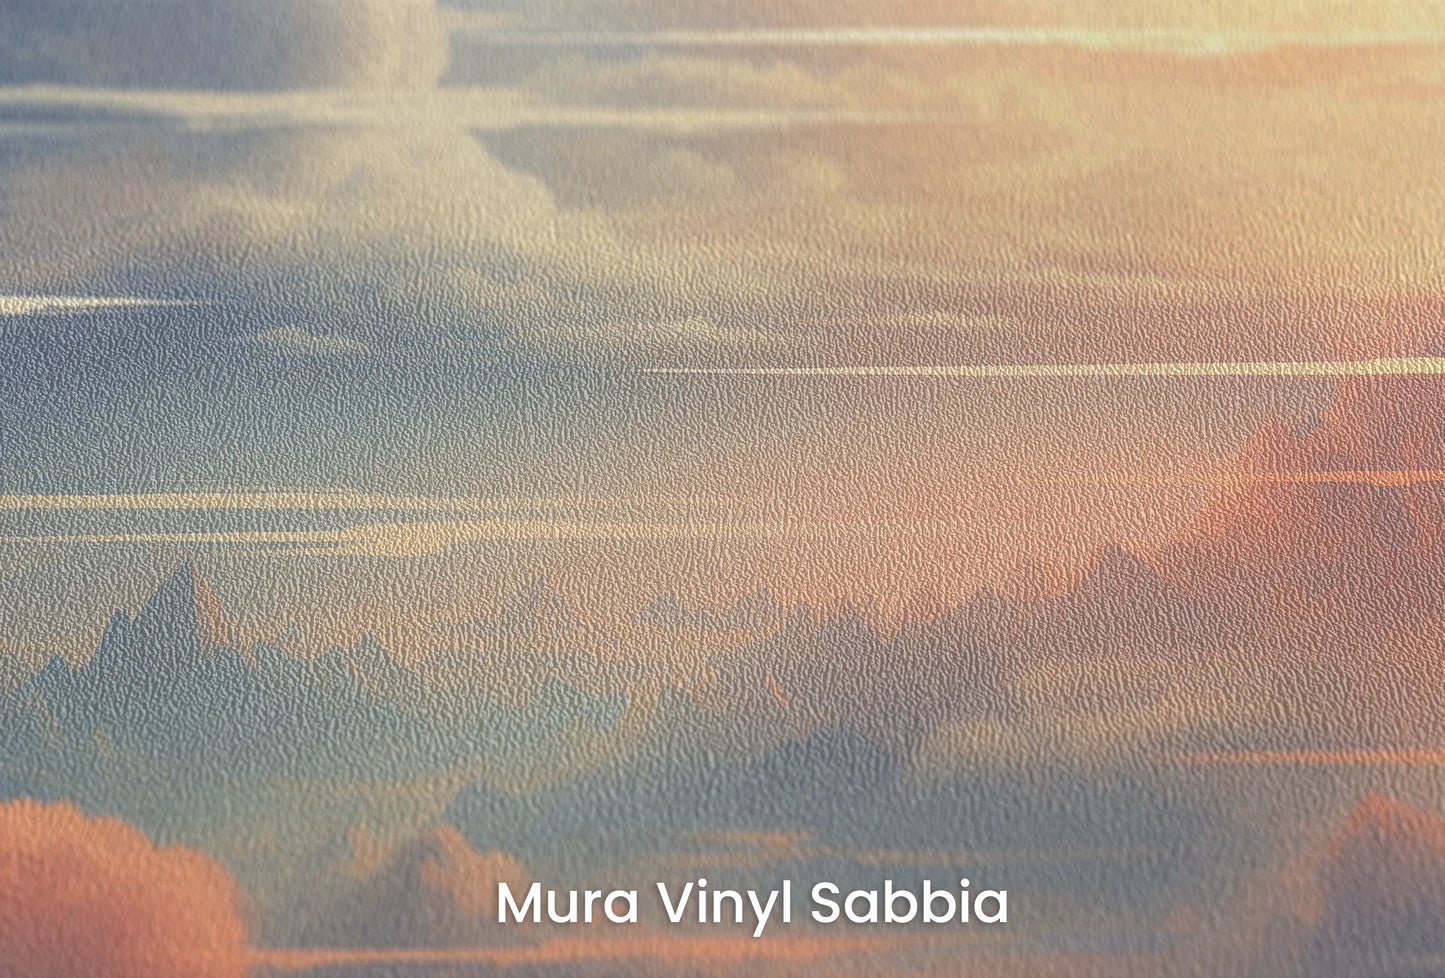 Zbliżenie na artystyczną fototapetę o nazwie Serene Altitudes na podłożu Mura Vinyl Sabbia struktura grubego ziarna piasku.